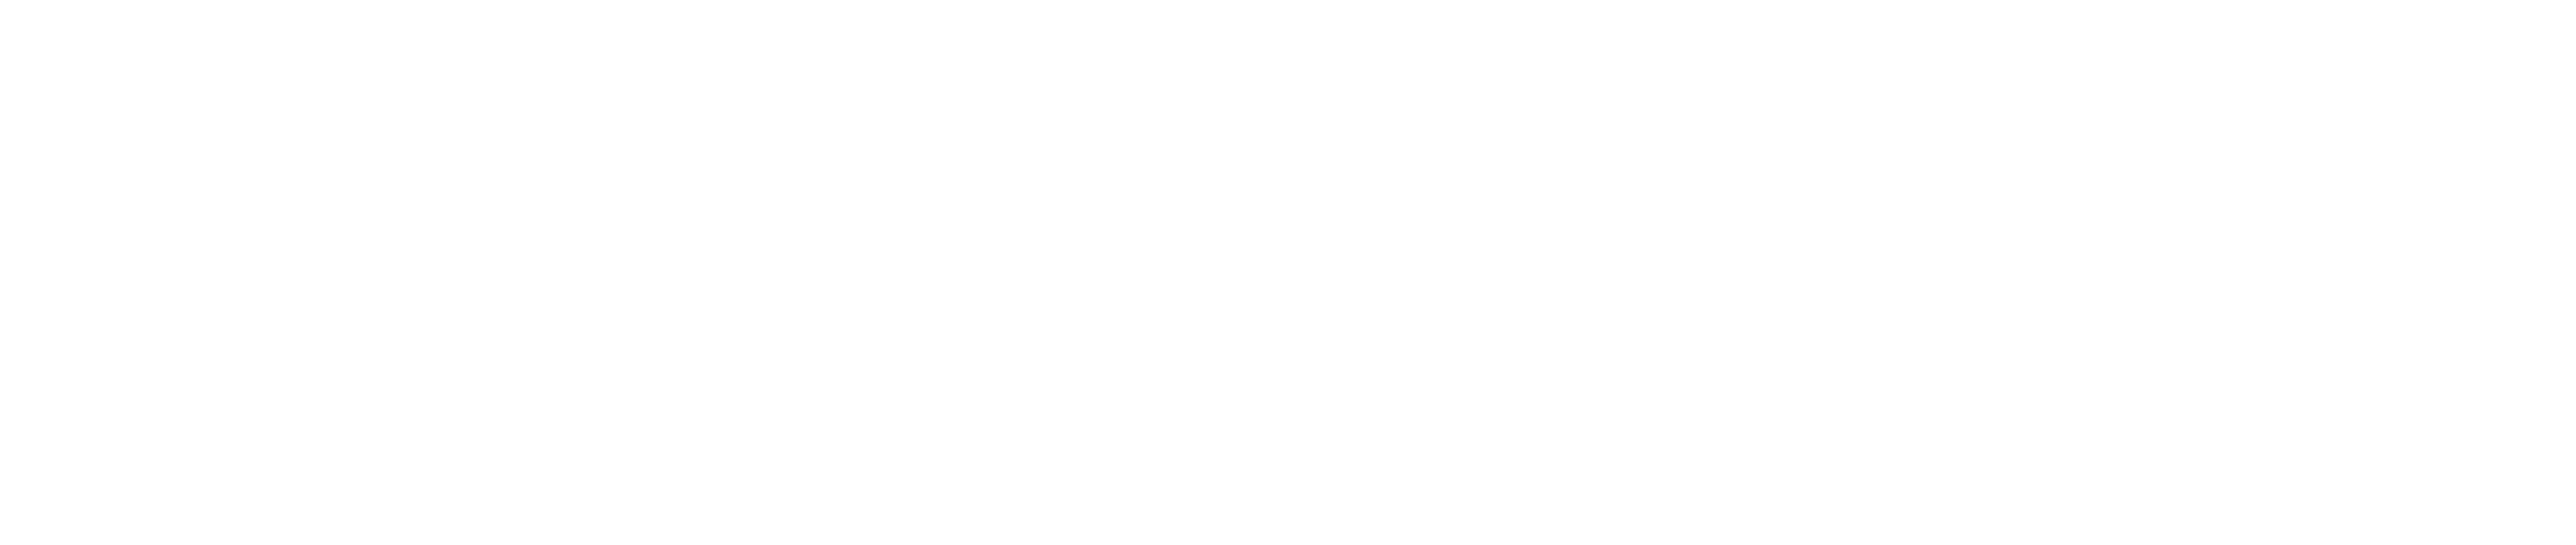 Prishni logo